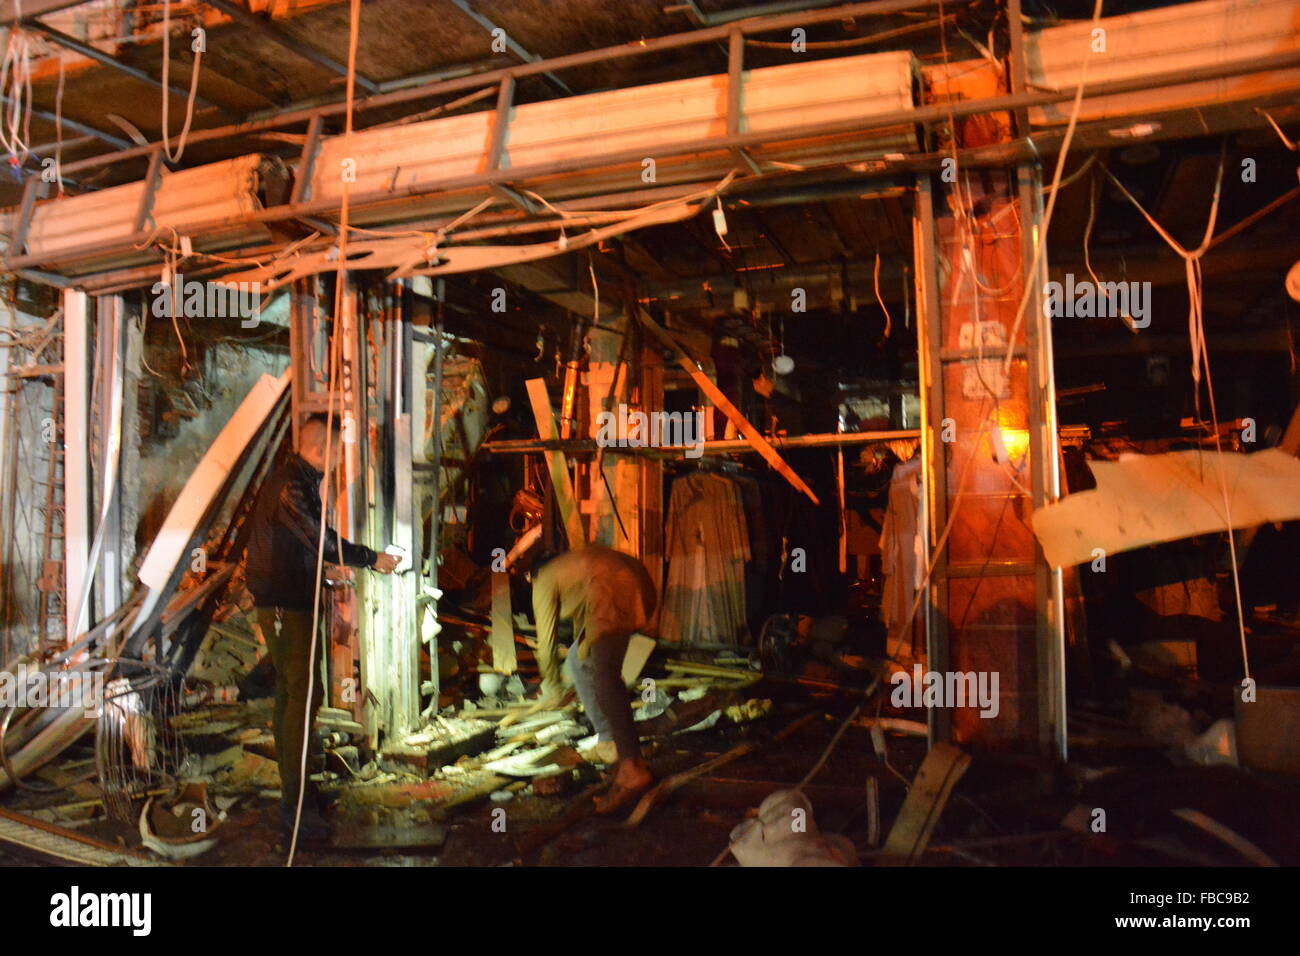 Irak : Trois kamikazes se font exploser centre d'un marché populaire Banque D'Images